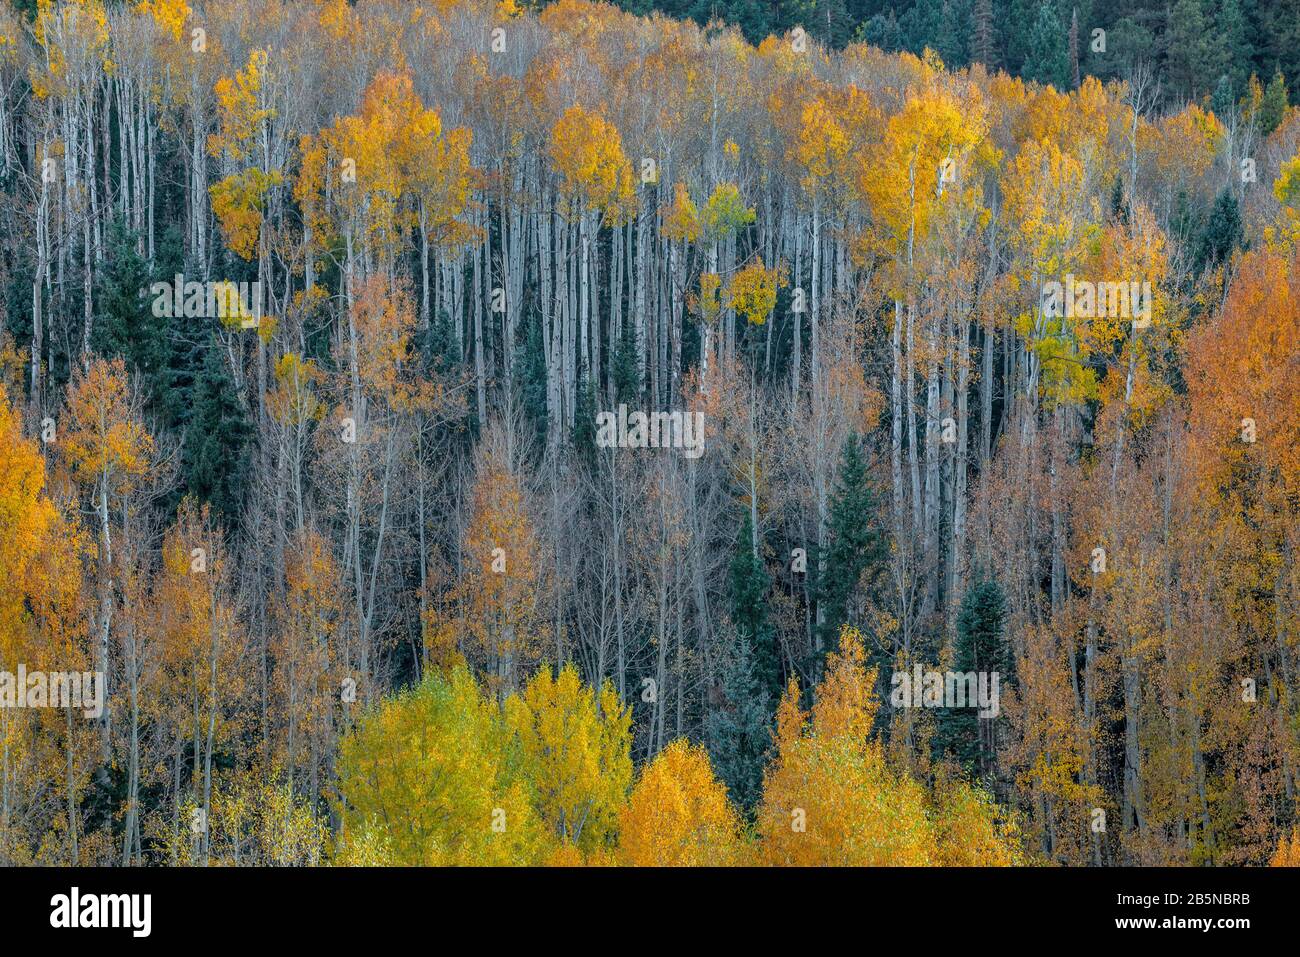 Aspen, Populus Tremula, Dallas Divide, Uncompahgre National Forest, Colorado Stock Photo